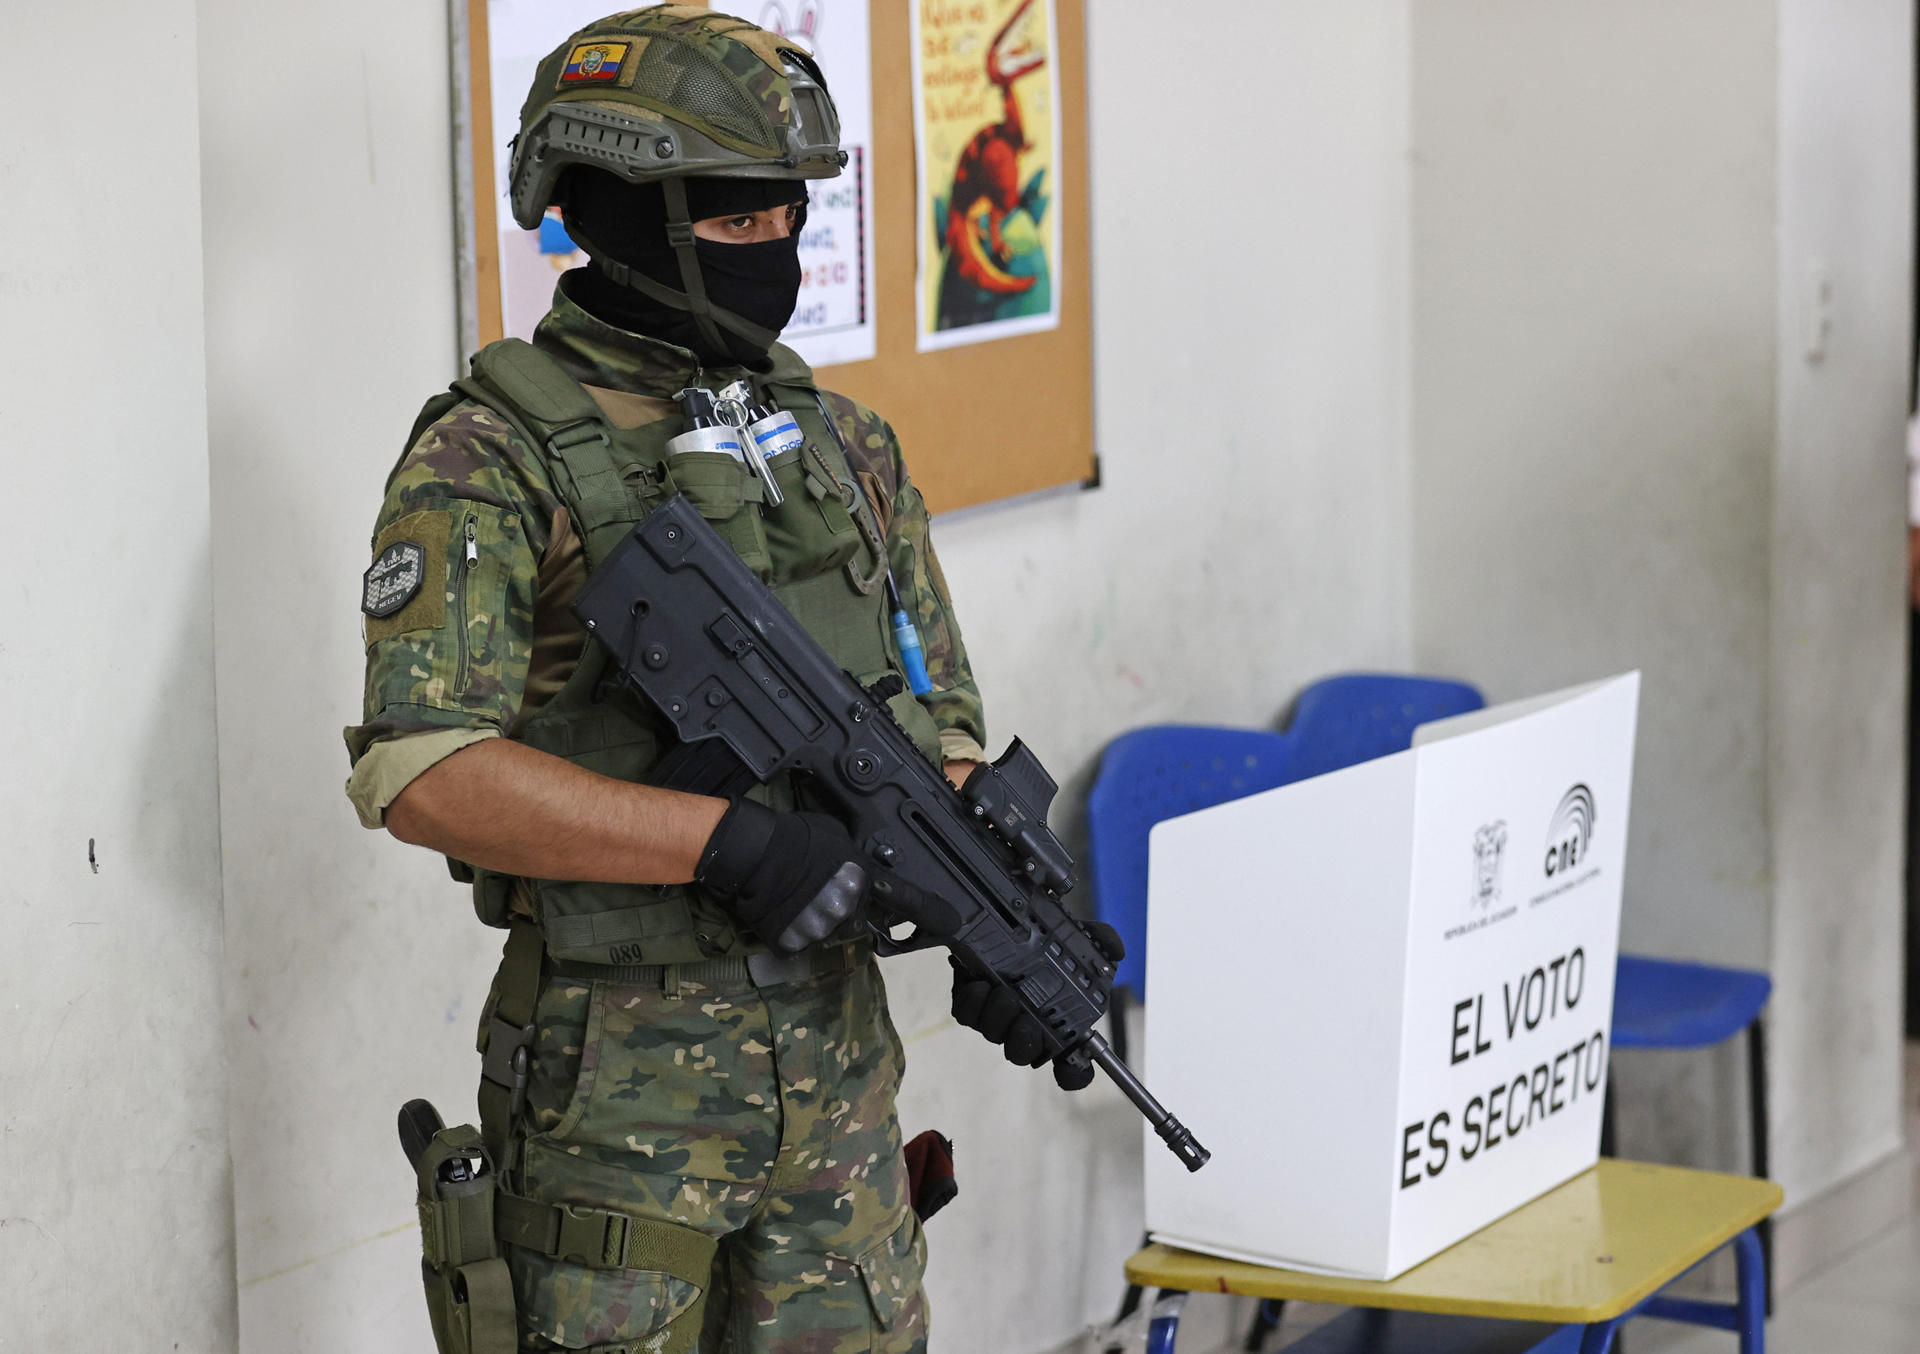 Militares brindan seguridad a los ciudadanos en sus centros de votación durante la jornada de elecciones generales, hoy, en Guayaquil (Ecuador). EFE/Mauricio Dueñas Castañeda